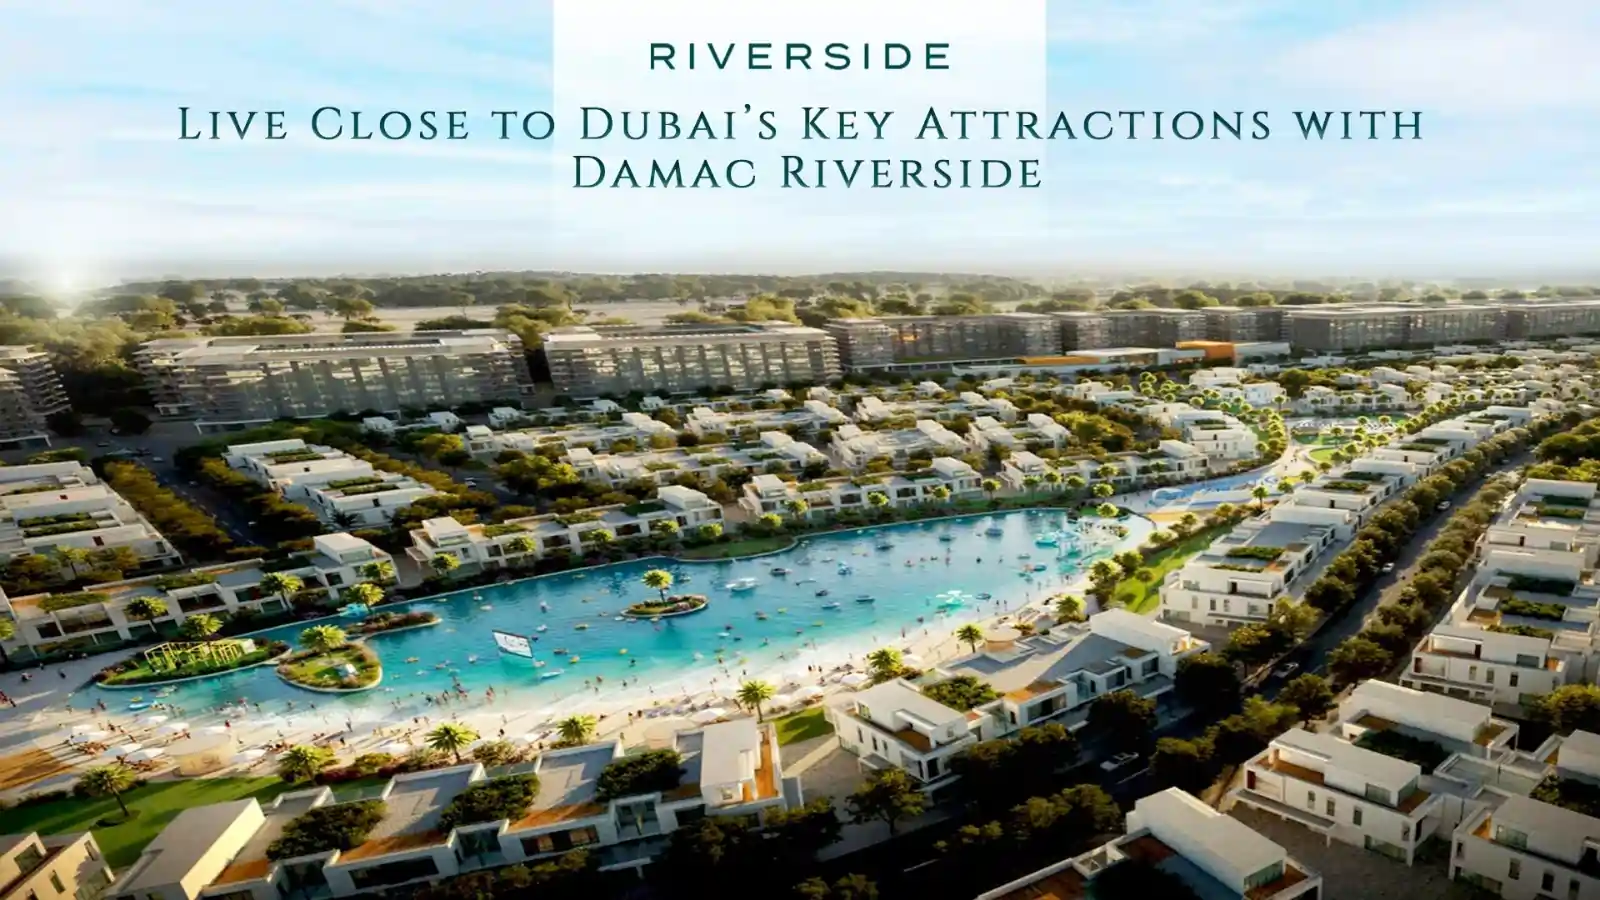 Damac Riverside